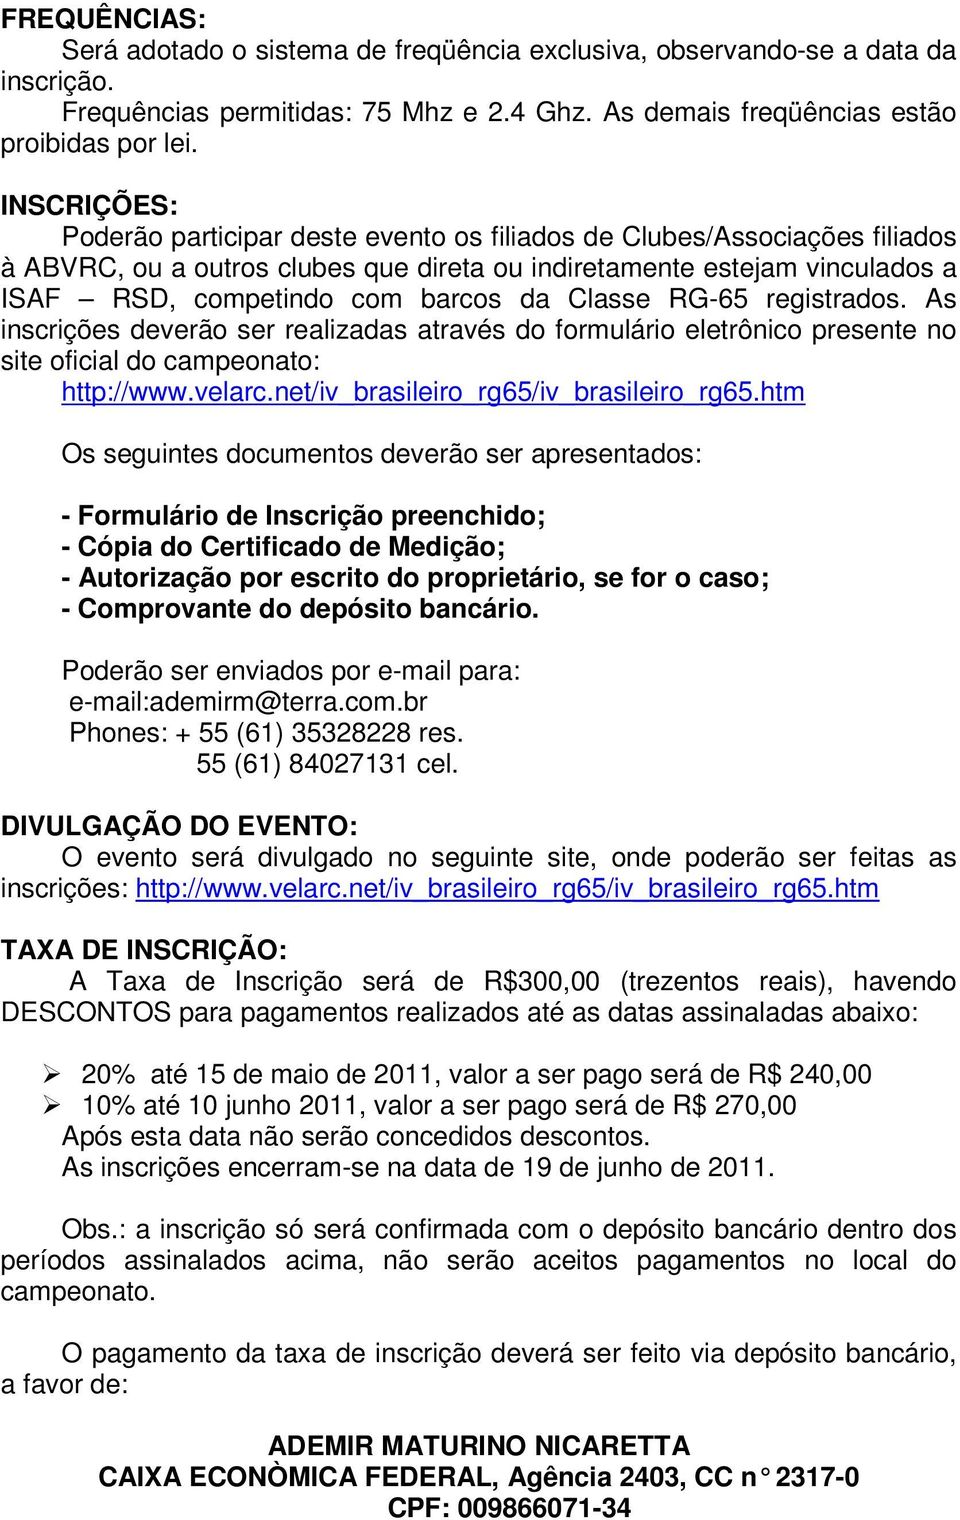 Classe RG-65 registrados. As inscrições deverão ser realizadas através do formulário eletrônico presente no site oficial do campeonato: http://www.velarc.net/iv_brasileiro_rg65/iv_brasileiro_rg65.